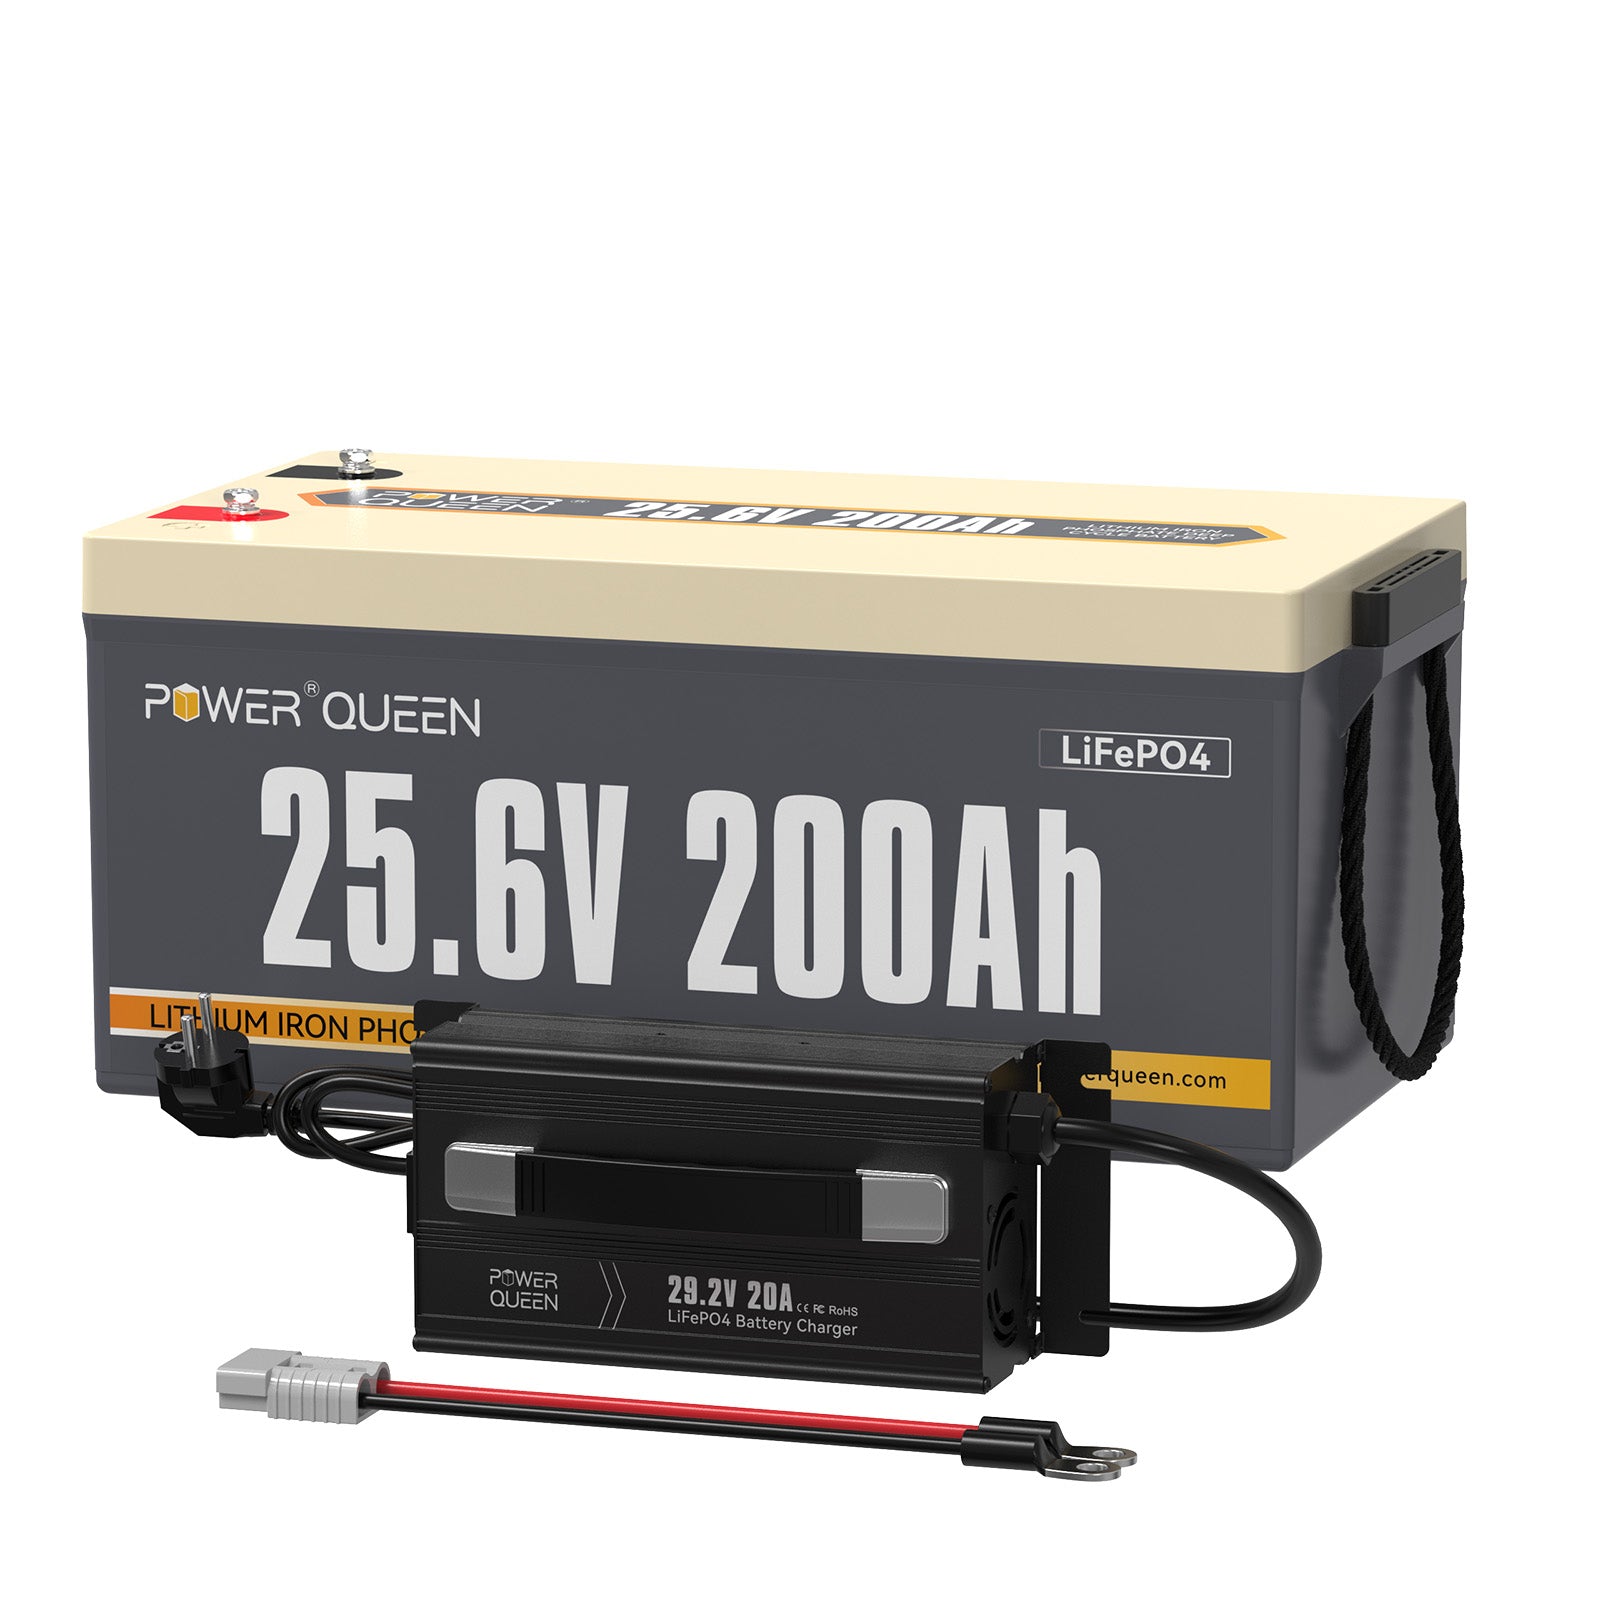 【0% IVA】Batería Power Queen 24V 200Ah LiFePO4, BMS 200A incorporado